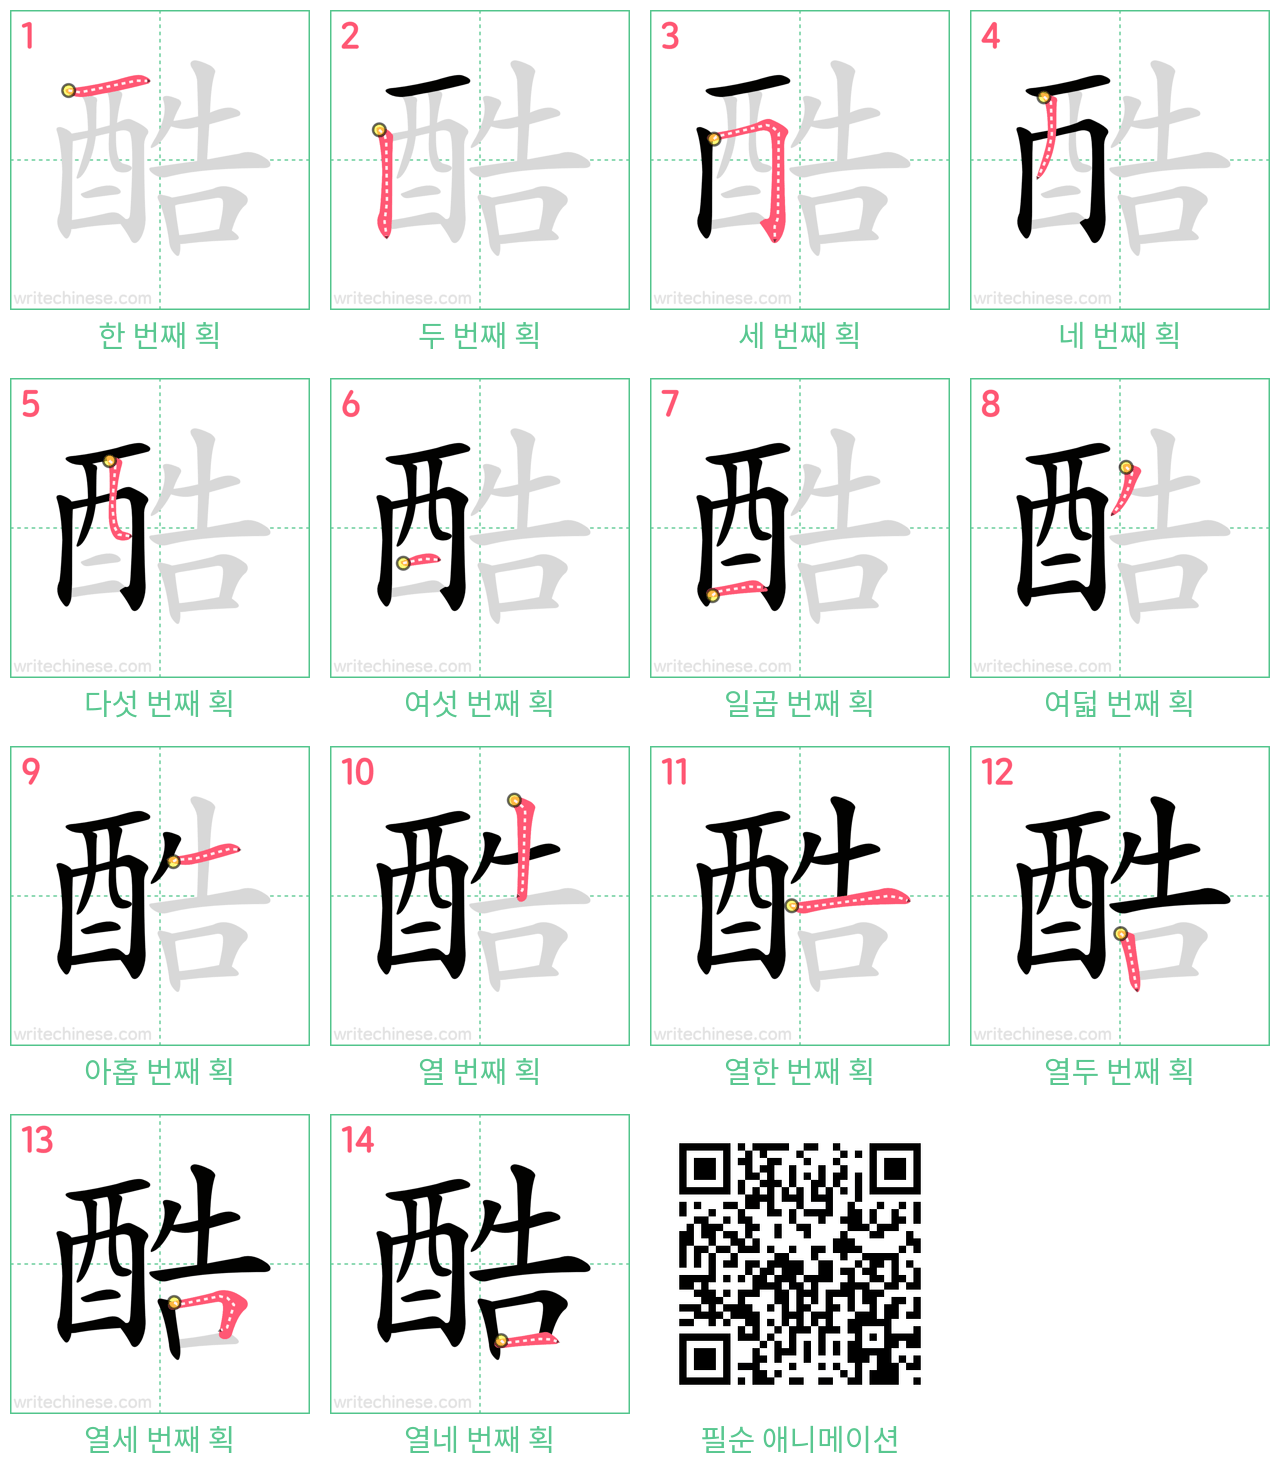 酷 step-by-step stroke order diagrams